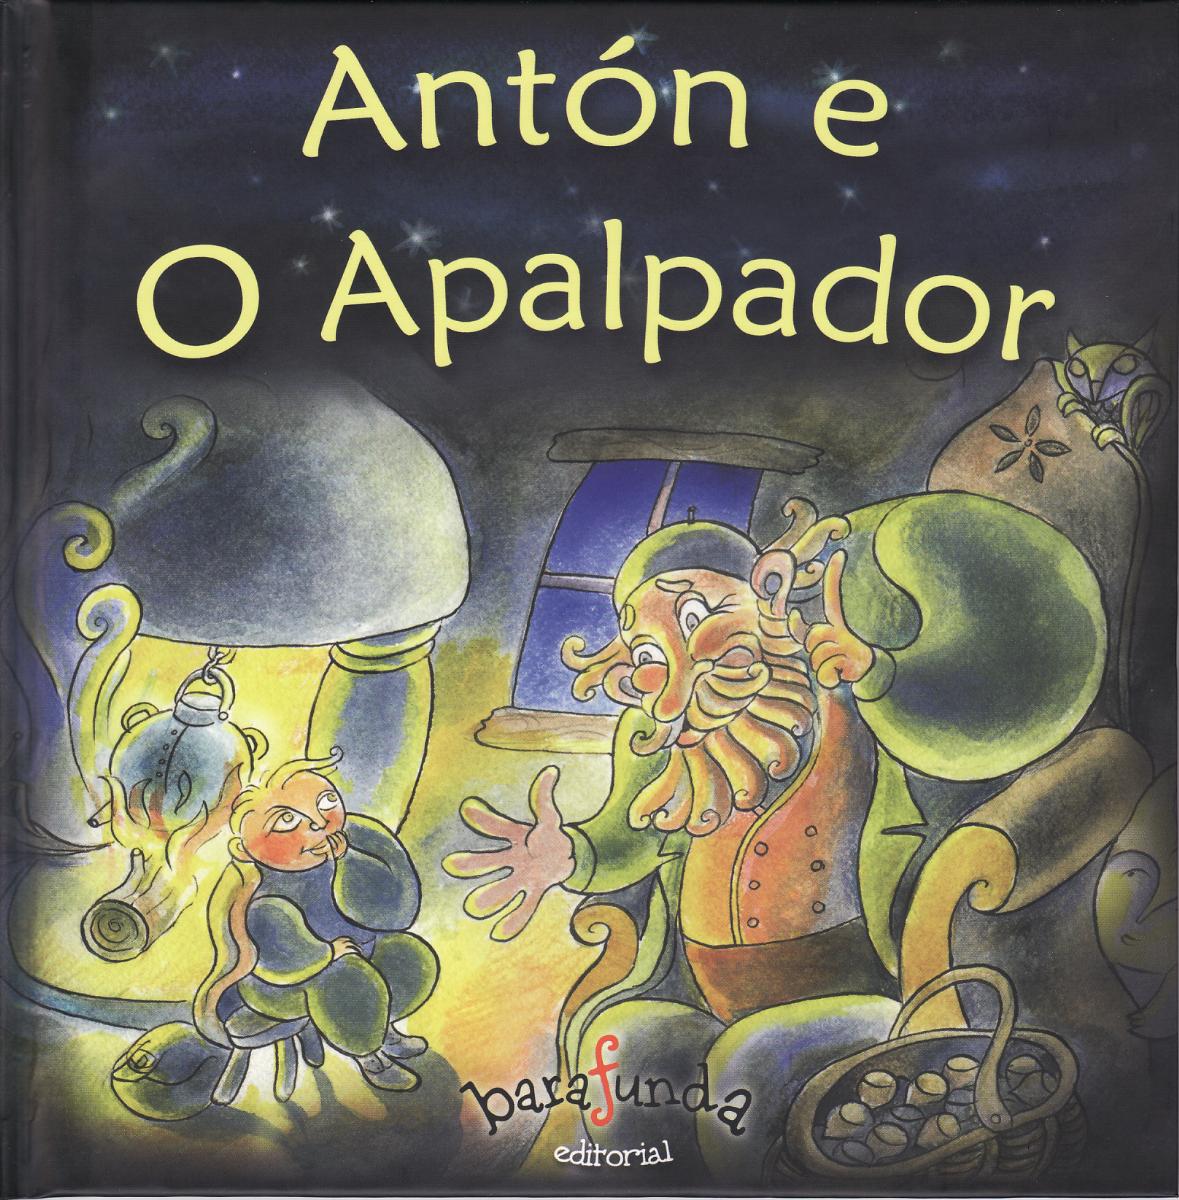 Antón e O Apalpador